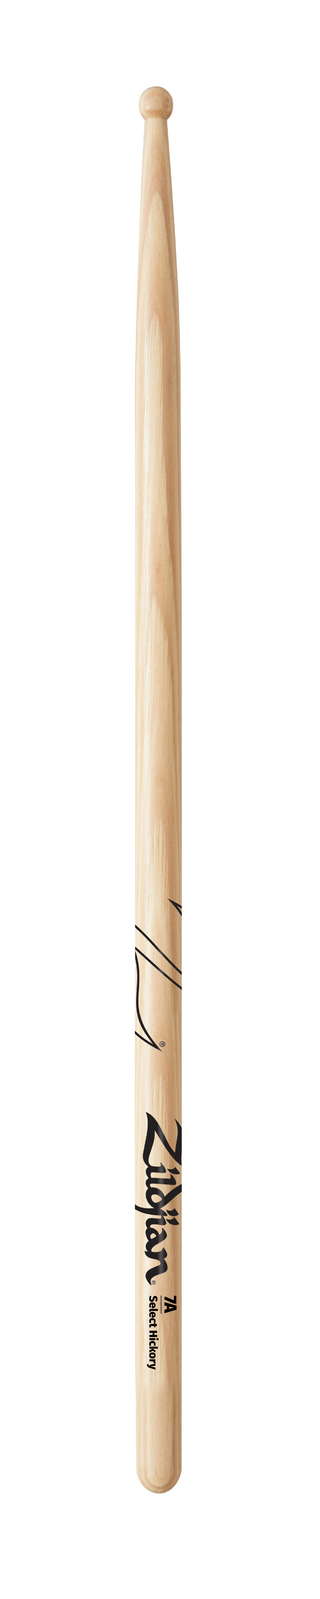 Zildjian 7A Wood Tip Drumsticks